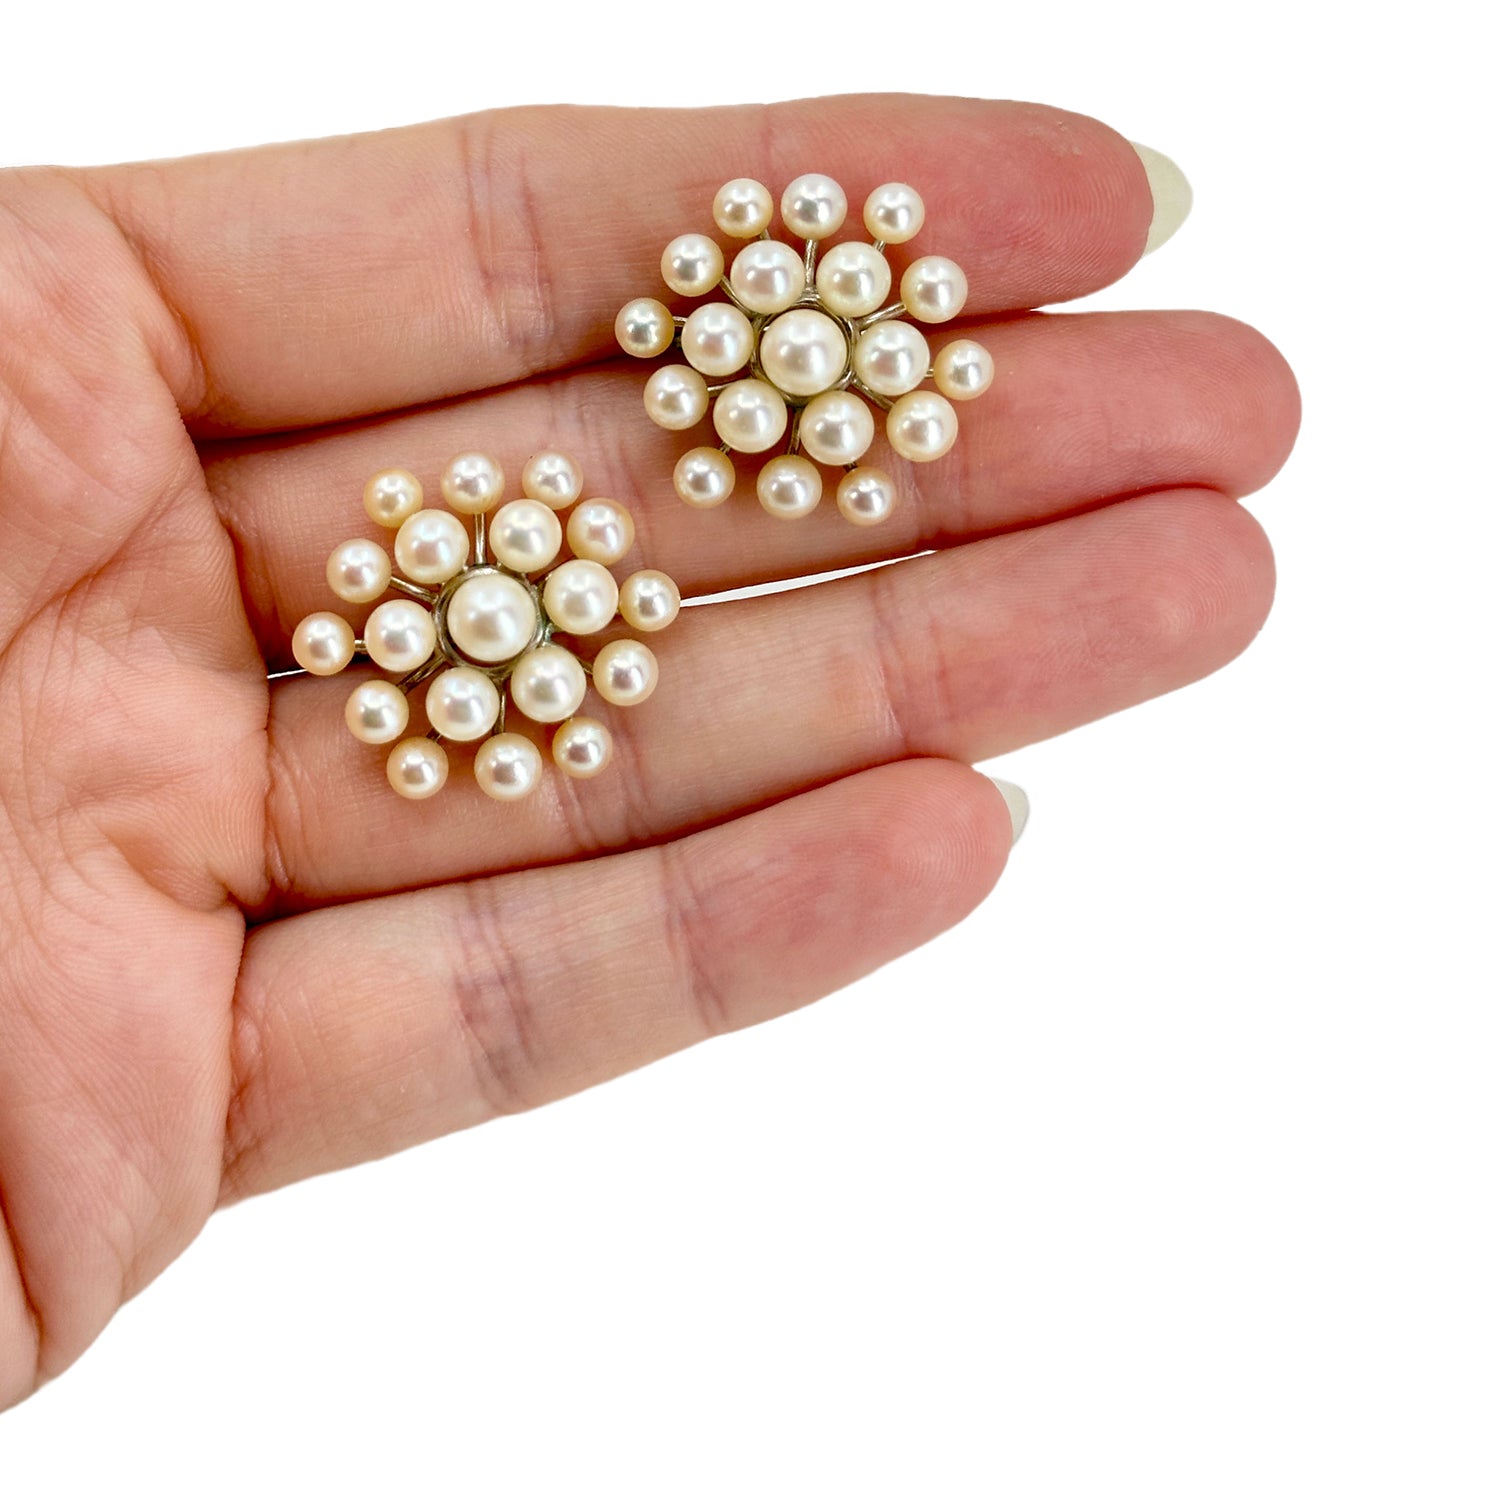 Snowflake Modernist Akoya Saltwater Cultured Pearl Vintage Screwback Earrings- Sterling Silver